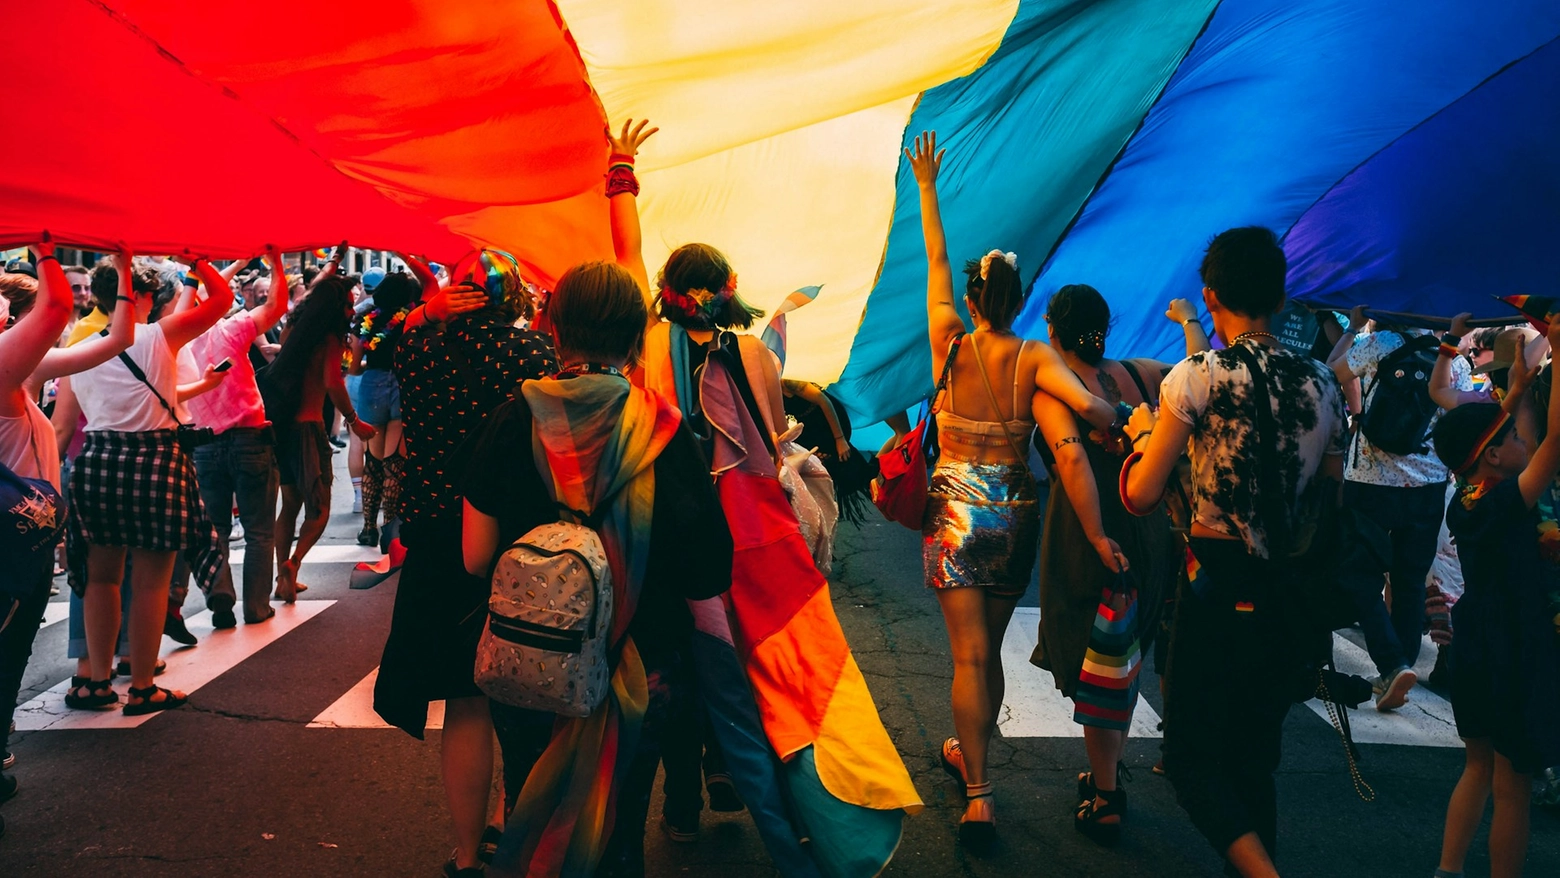 Il 17 maggio è da vent’anni la giornata internazionale contro l’omolesbobitransfobia. In questo lasso di tempo di passi ne sono stati fatti, ma alcuni indietro. L’Italia, ad esempio, è tra i paesi europei più discriminatori